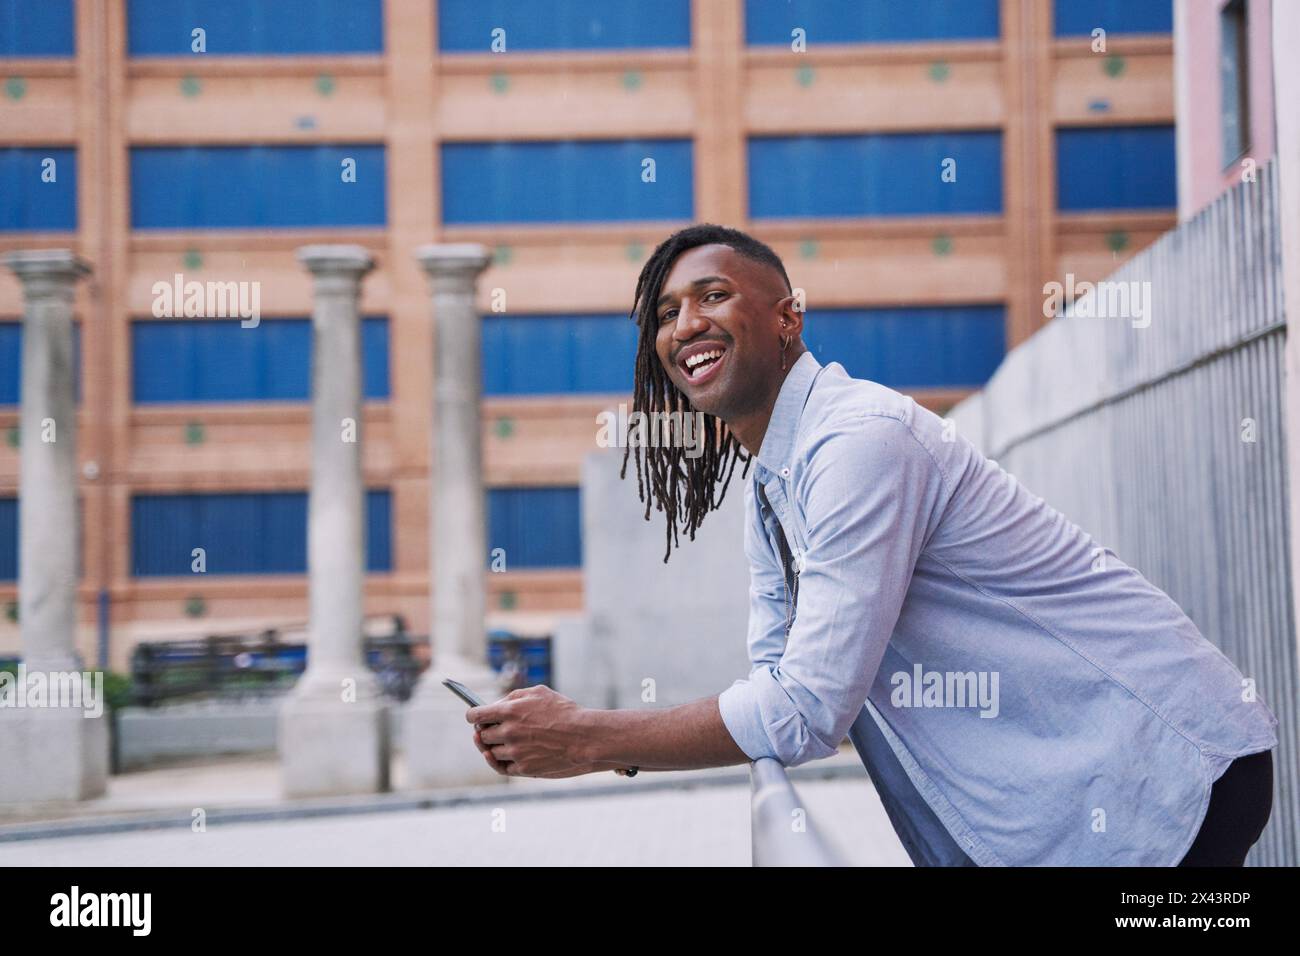 homme afro-américain souriant regardant dans la caméra avec son téléphone intelligent dans la main Banque D'Images